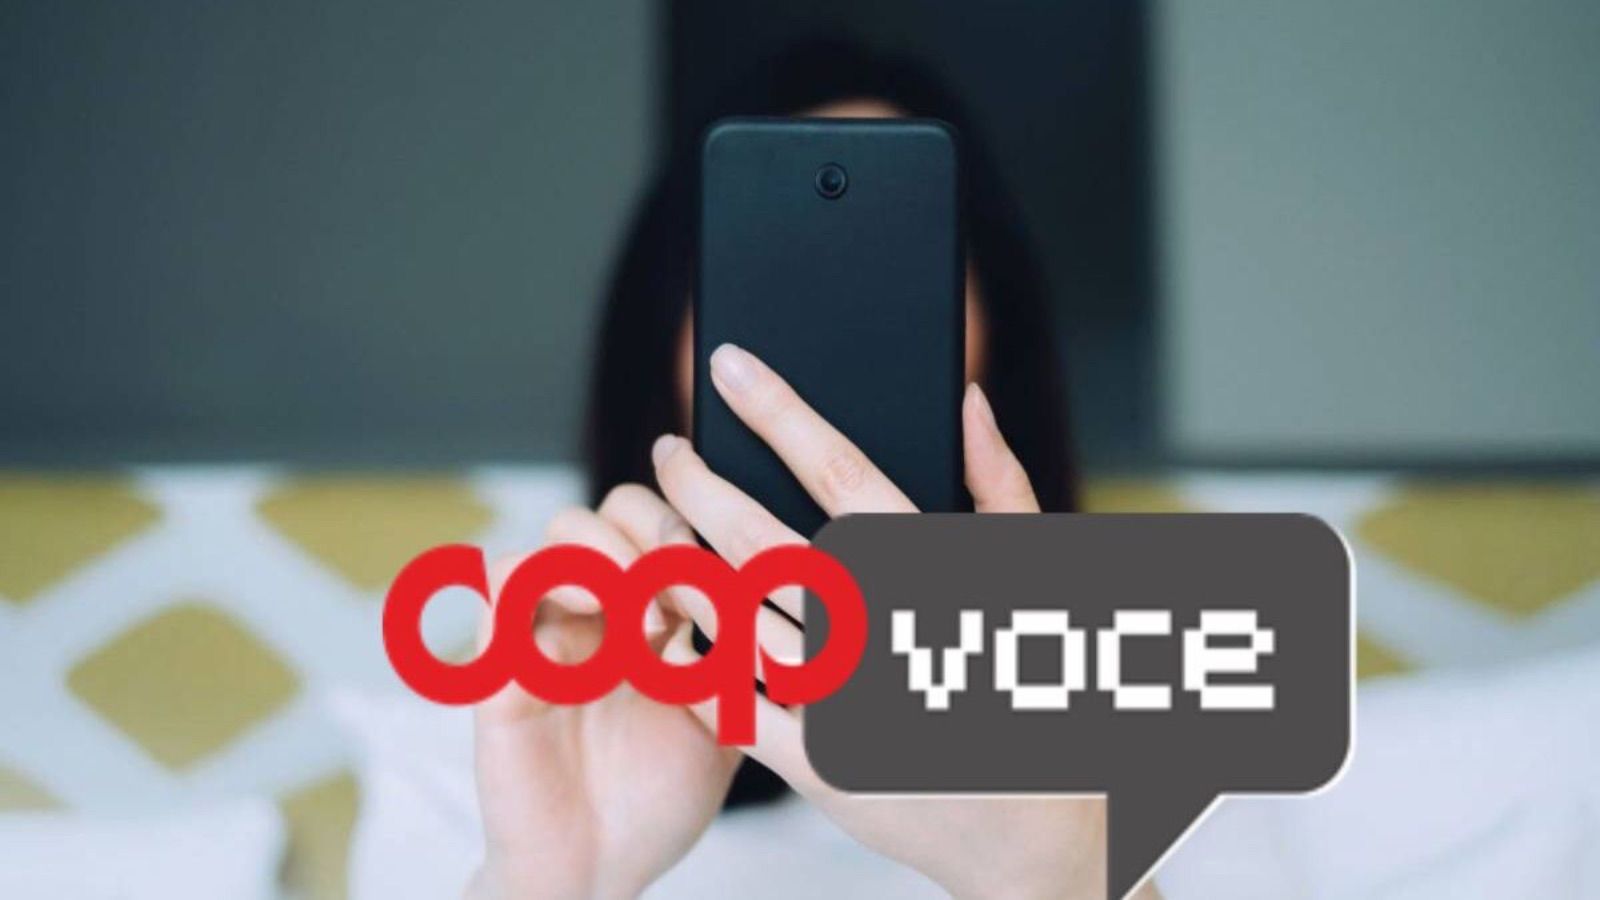 CoopVoce distrugge Vodafone con 180GB e un servizio GRATUITO